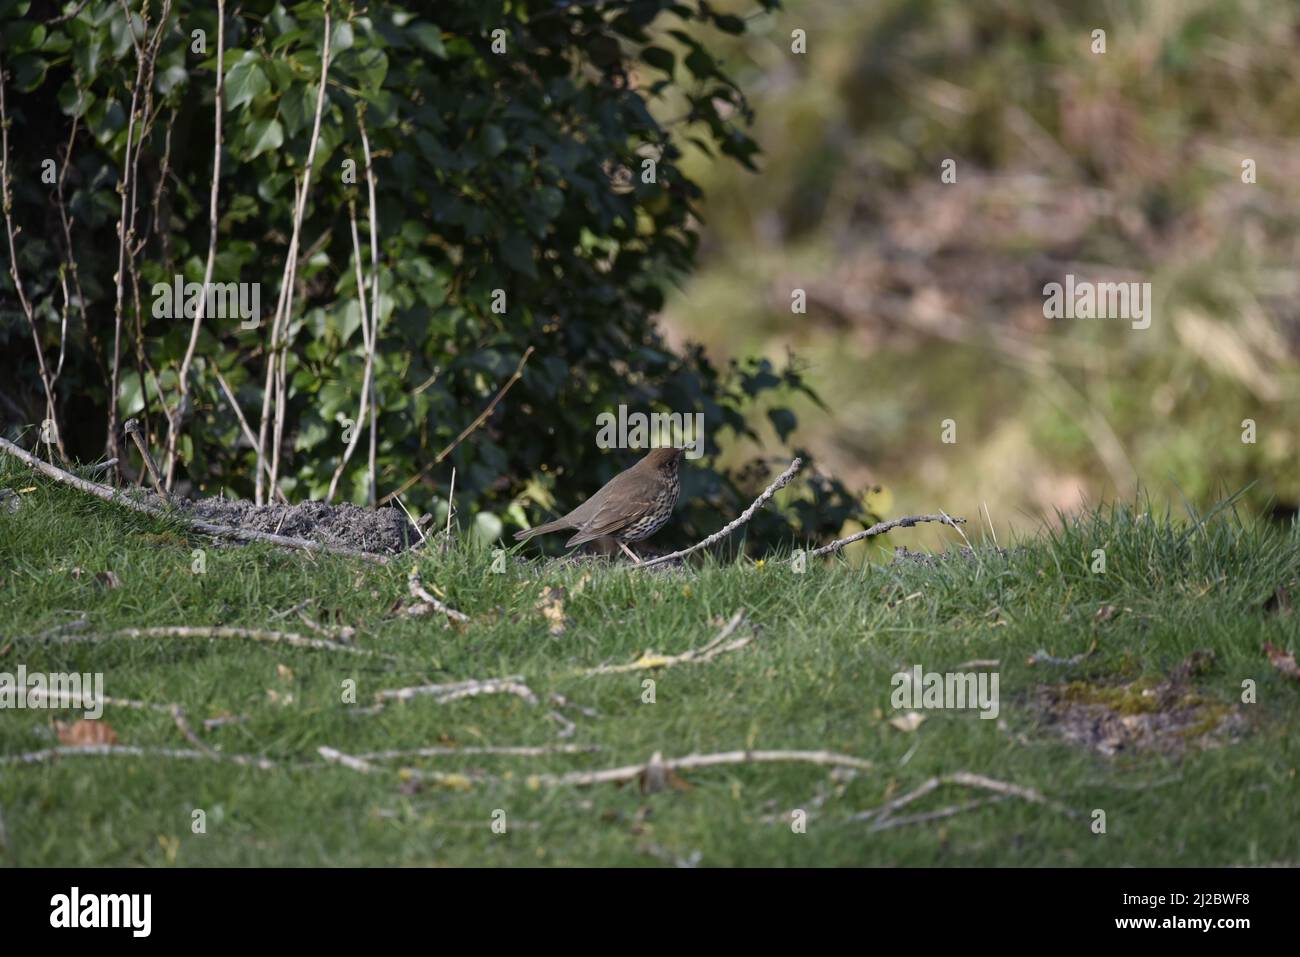 SONG Thrush (Turdus philomelos) en profil droit avec un millepertuis dans son bec, en regardant à droite de l'image, dans la campagne galloise, au Royaume-Uni au printemps Banque D'Images